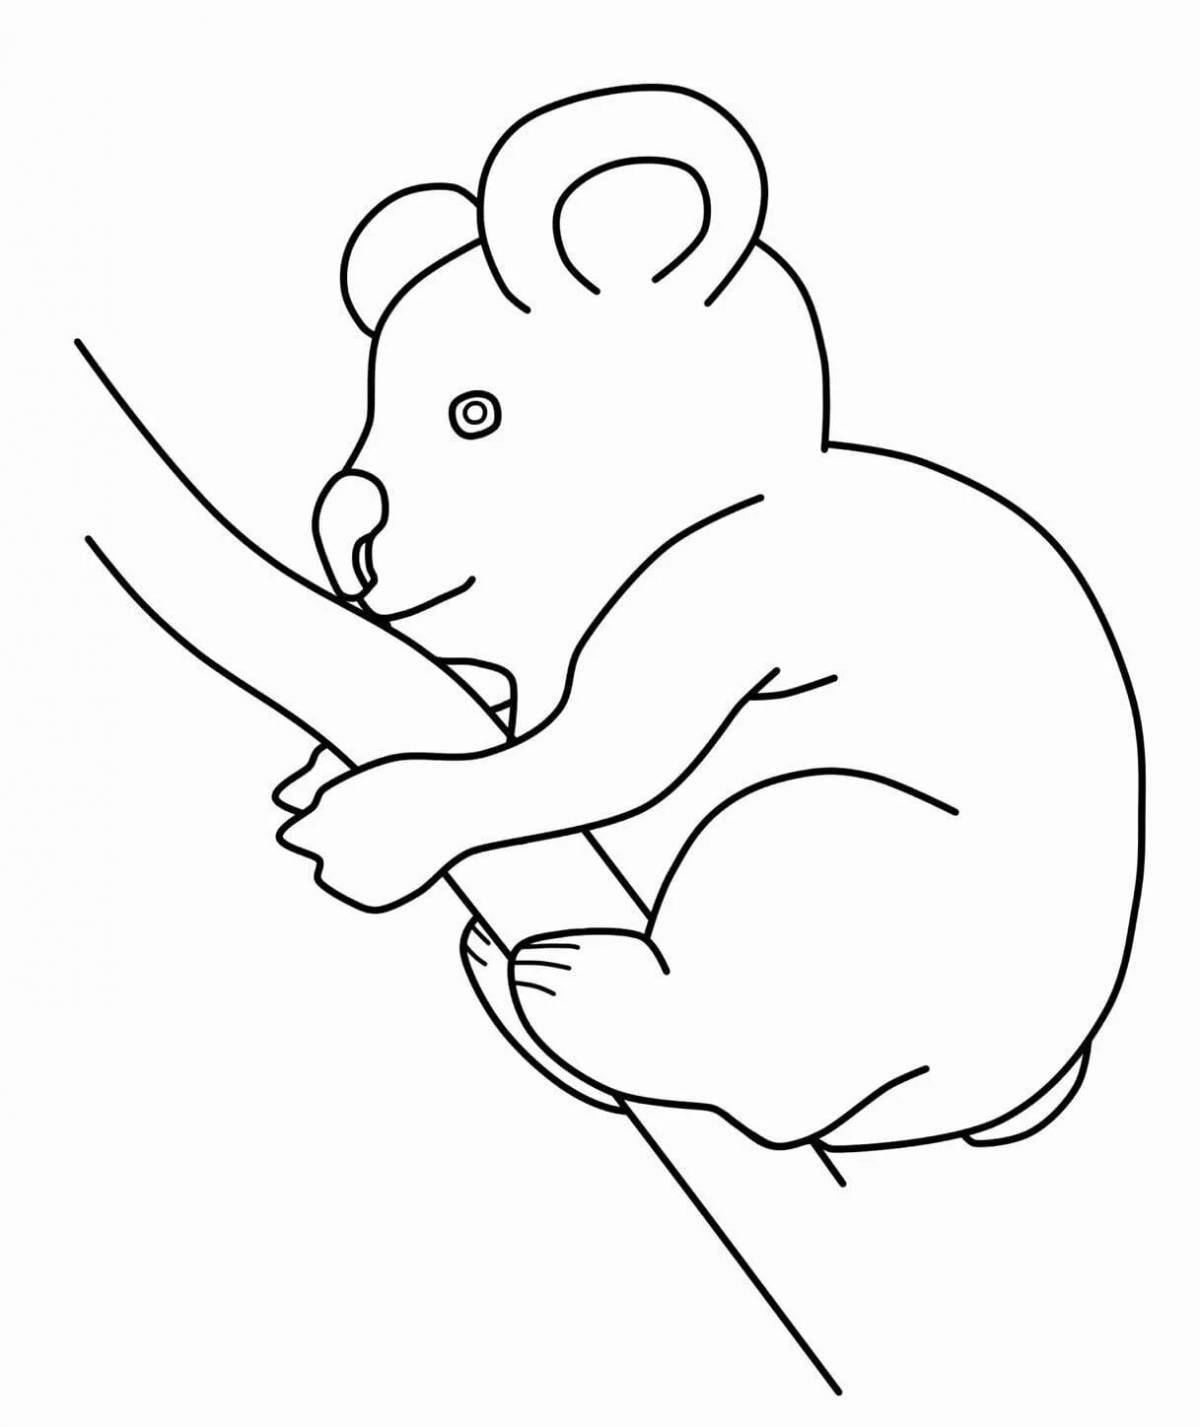 Веселая раскраска австралийских животных для детей